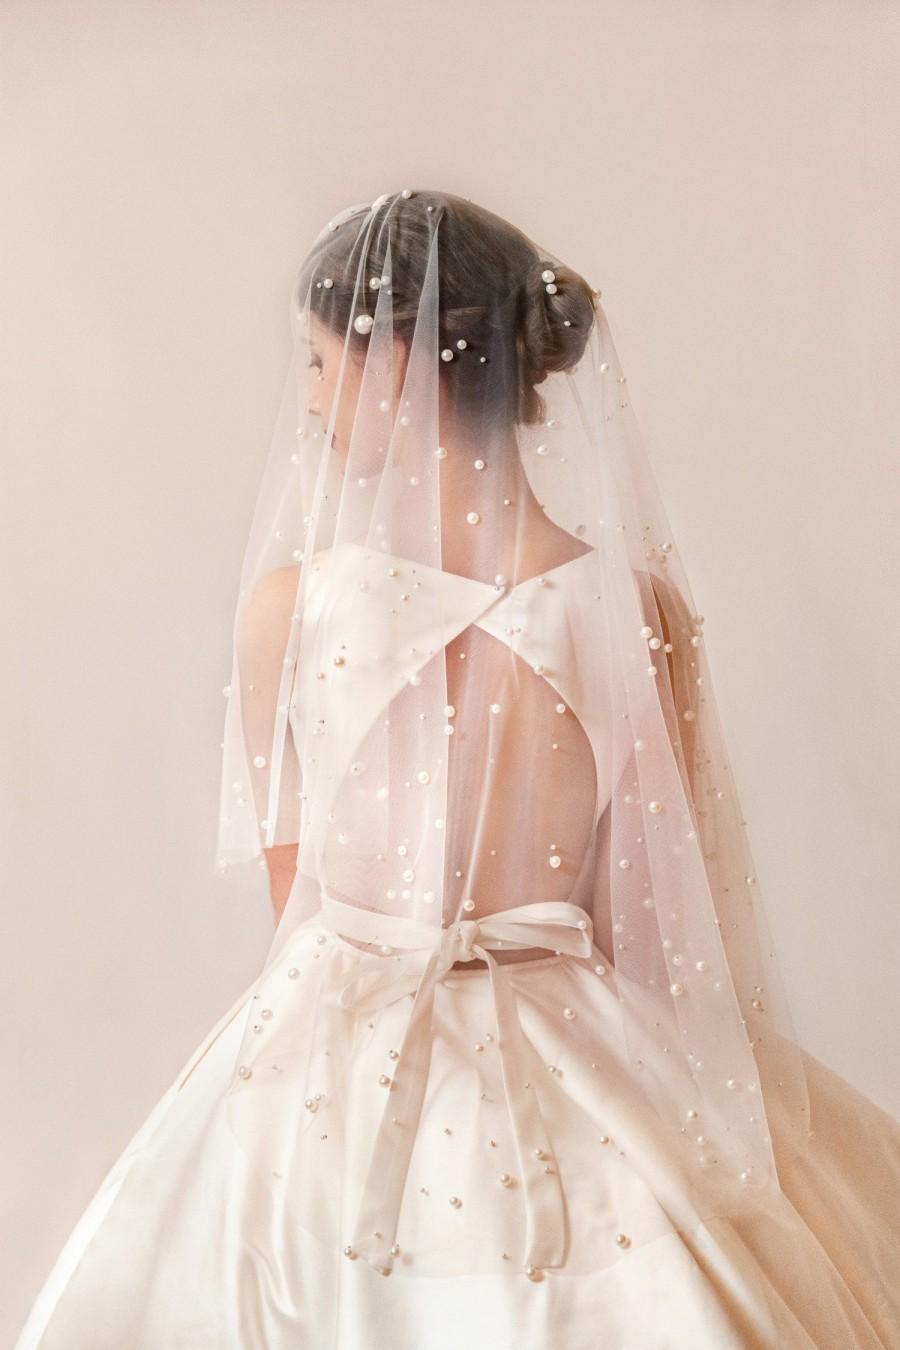 زفاف - wedding veil/custom design/hand made / bride veils/ long/short/over face/ pearls/personalised wedding veil/ivory colour/bride accessories